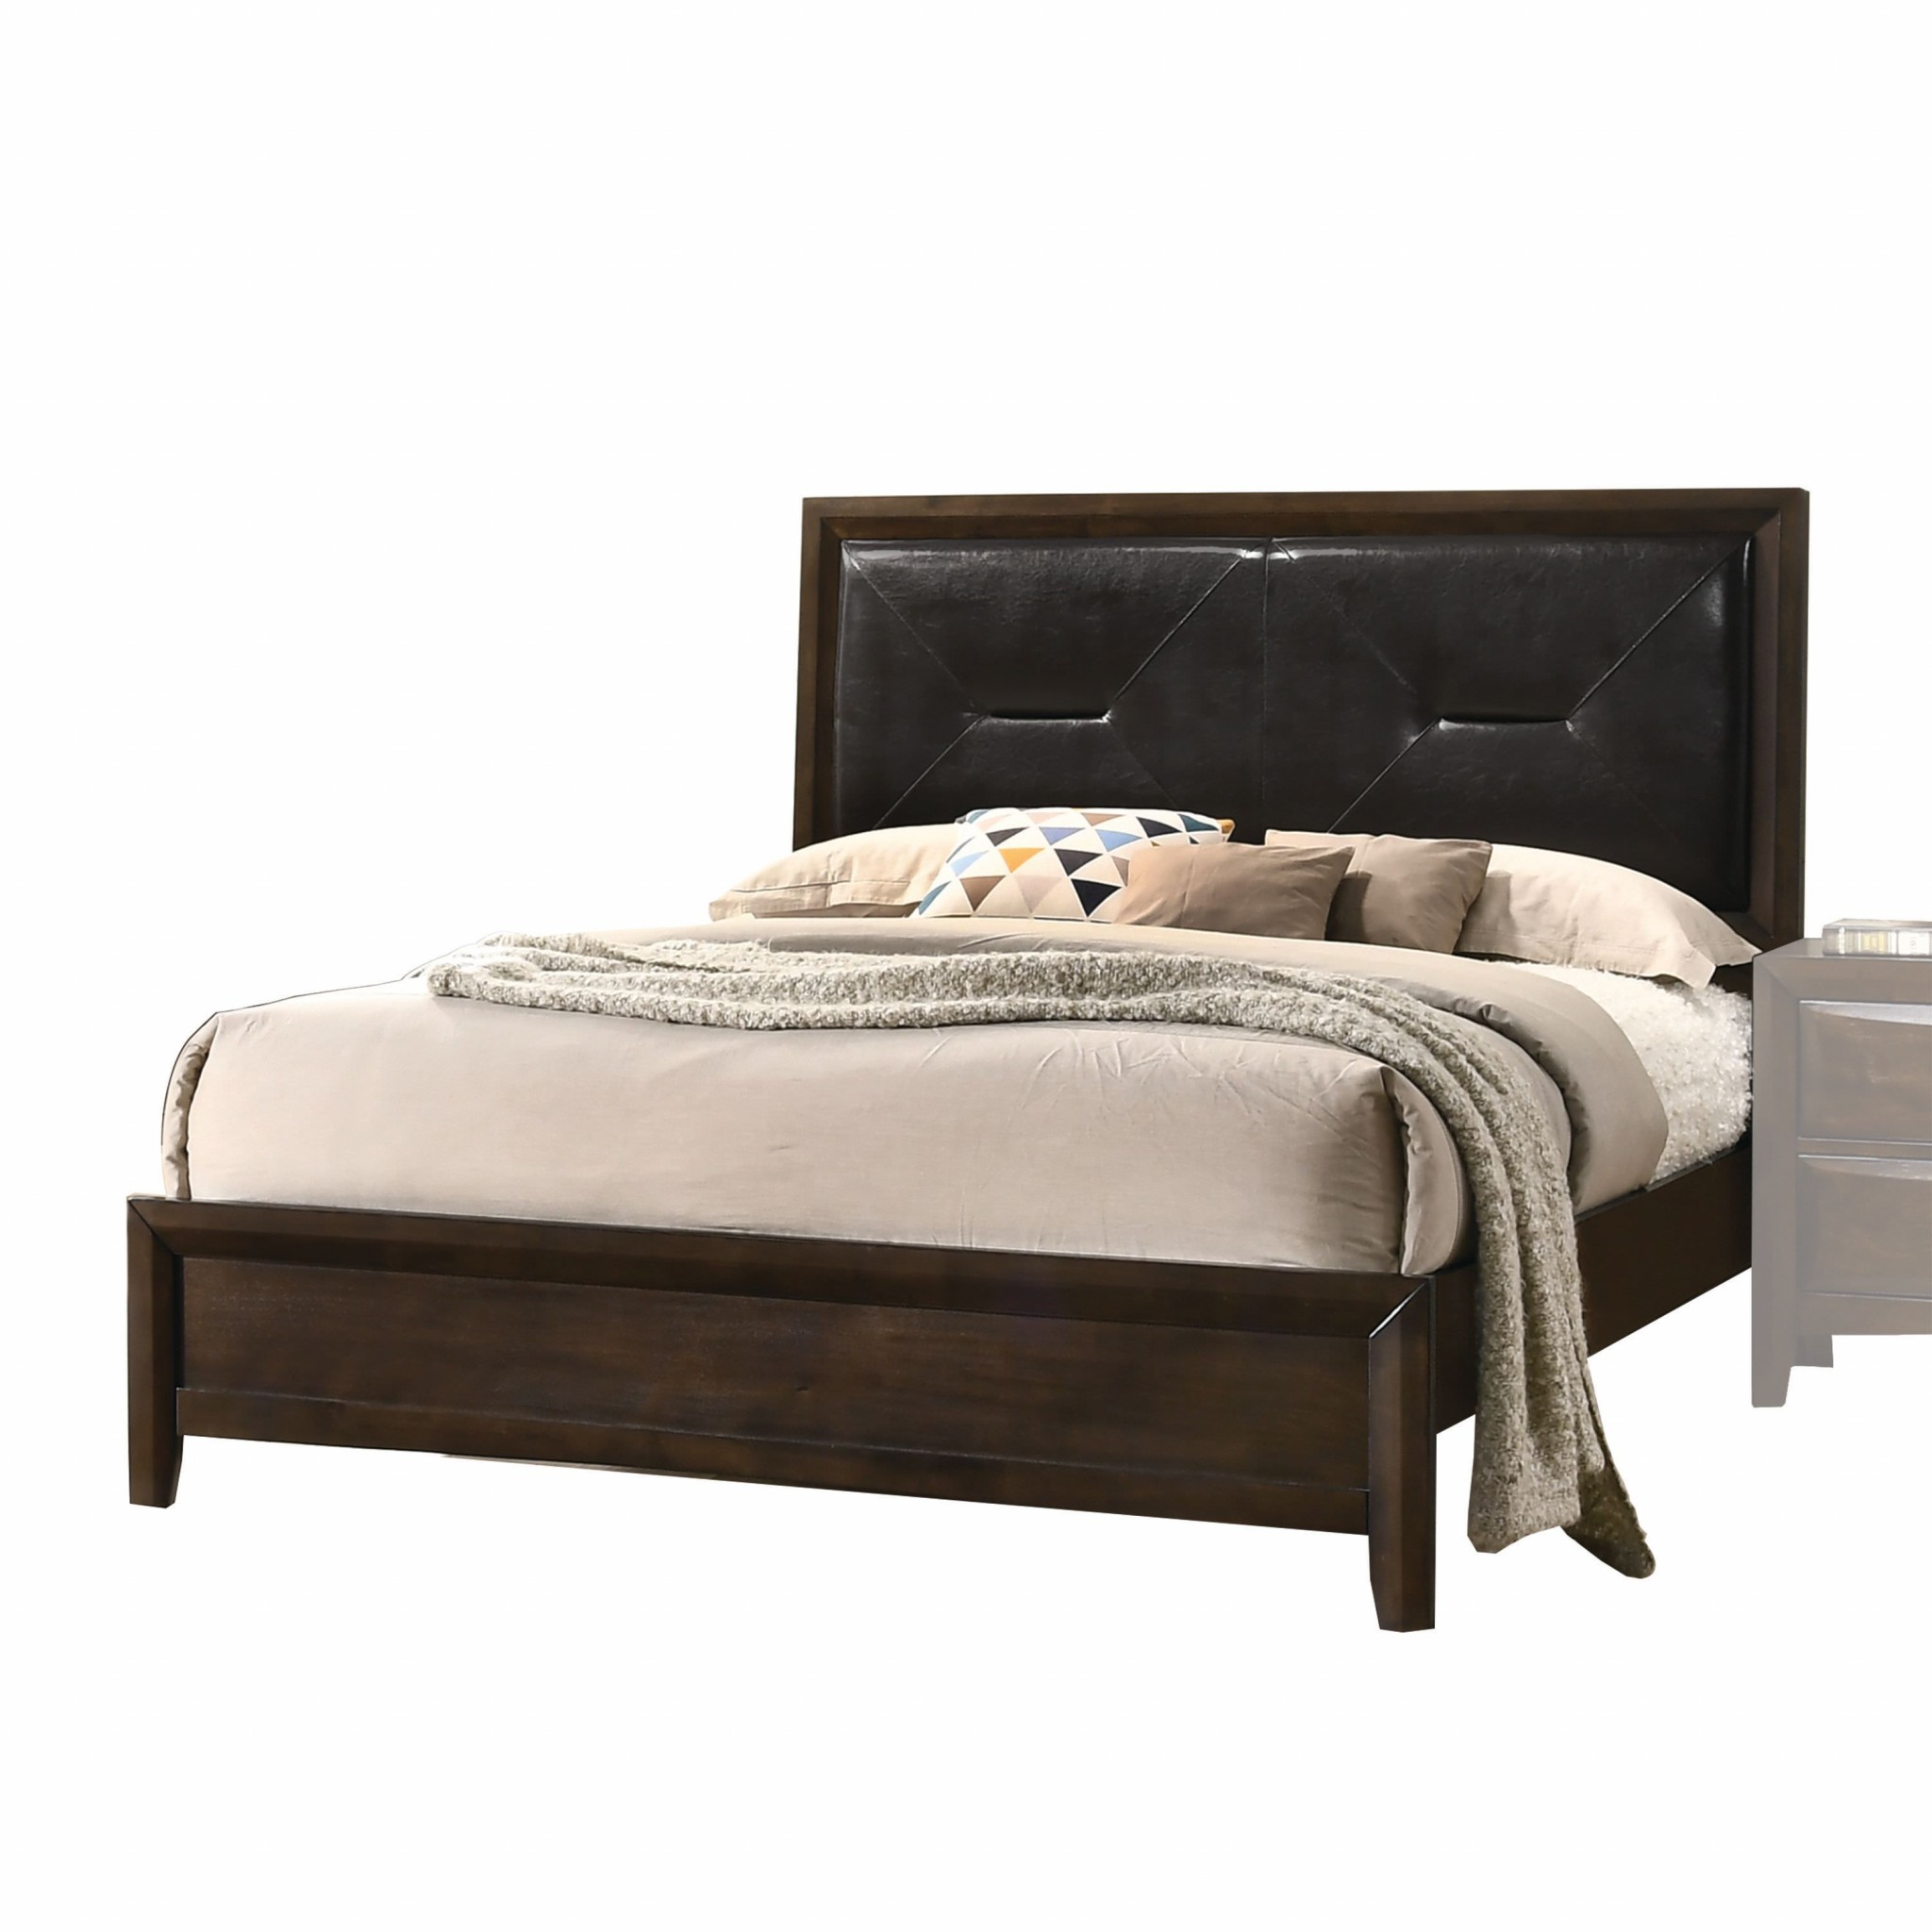 80" X 83" X 52" Black PU Walnut Wood Upholstered HB King Bed